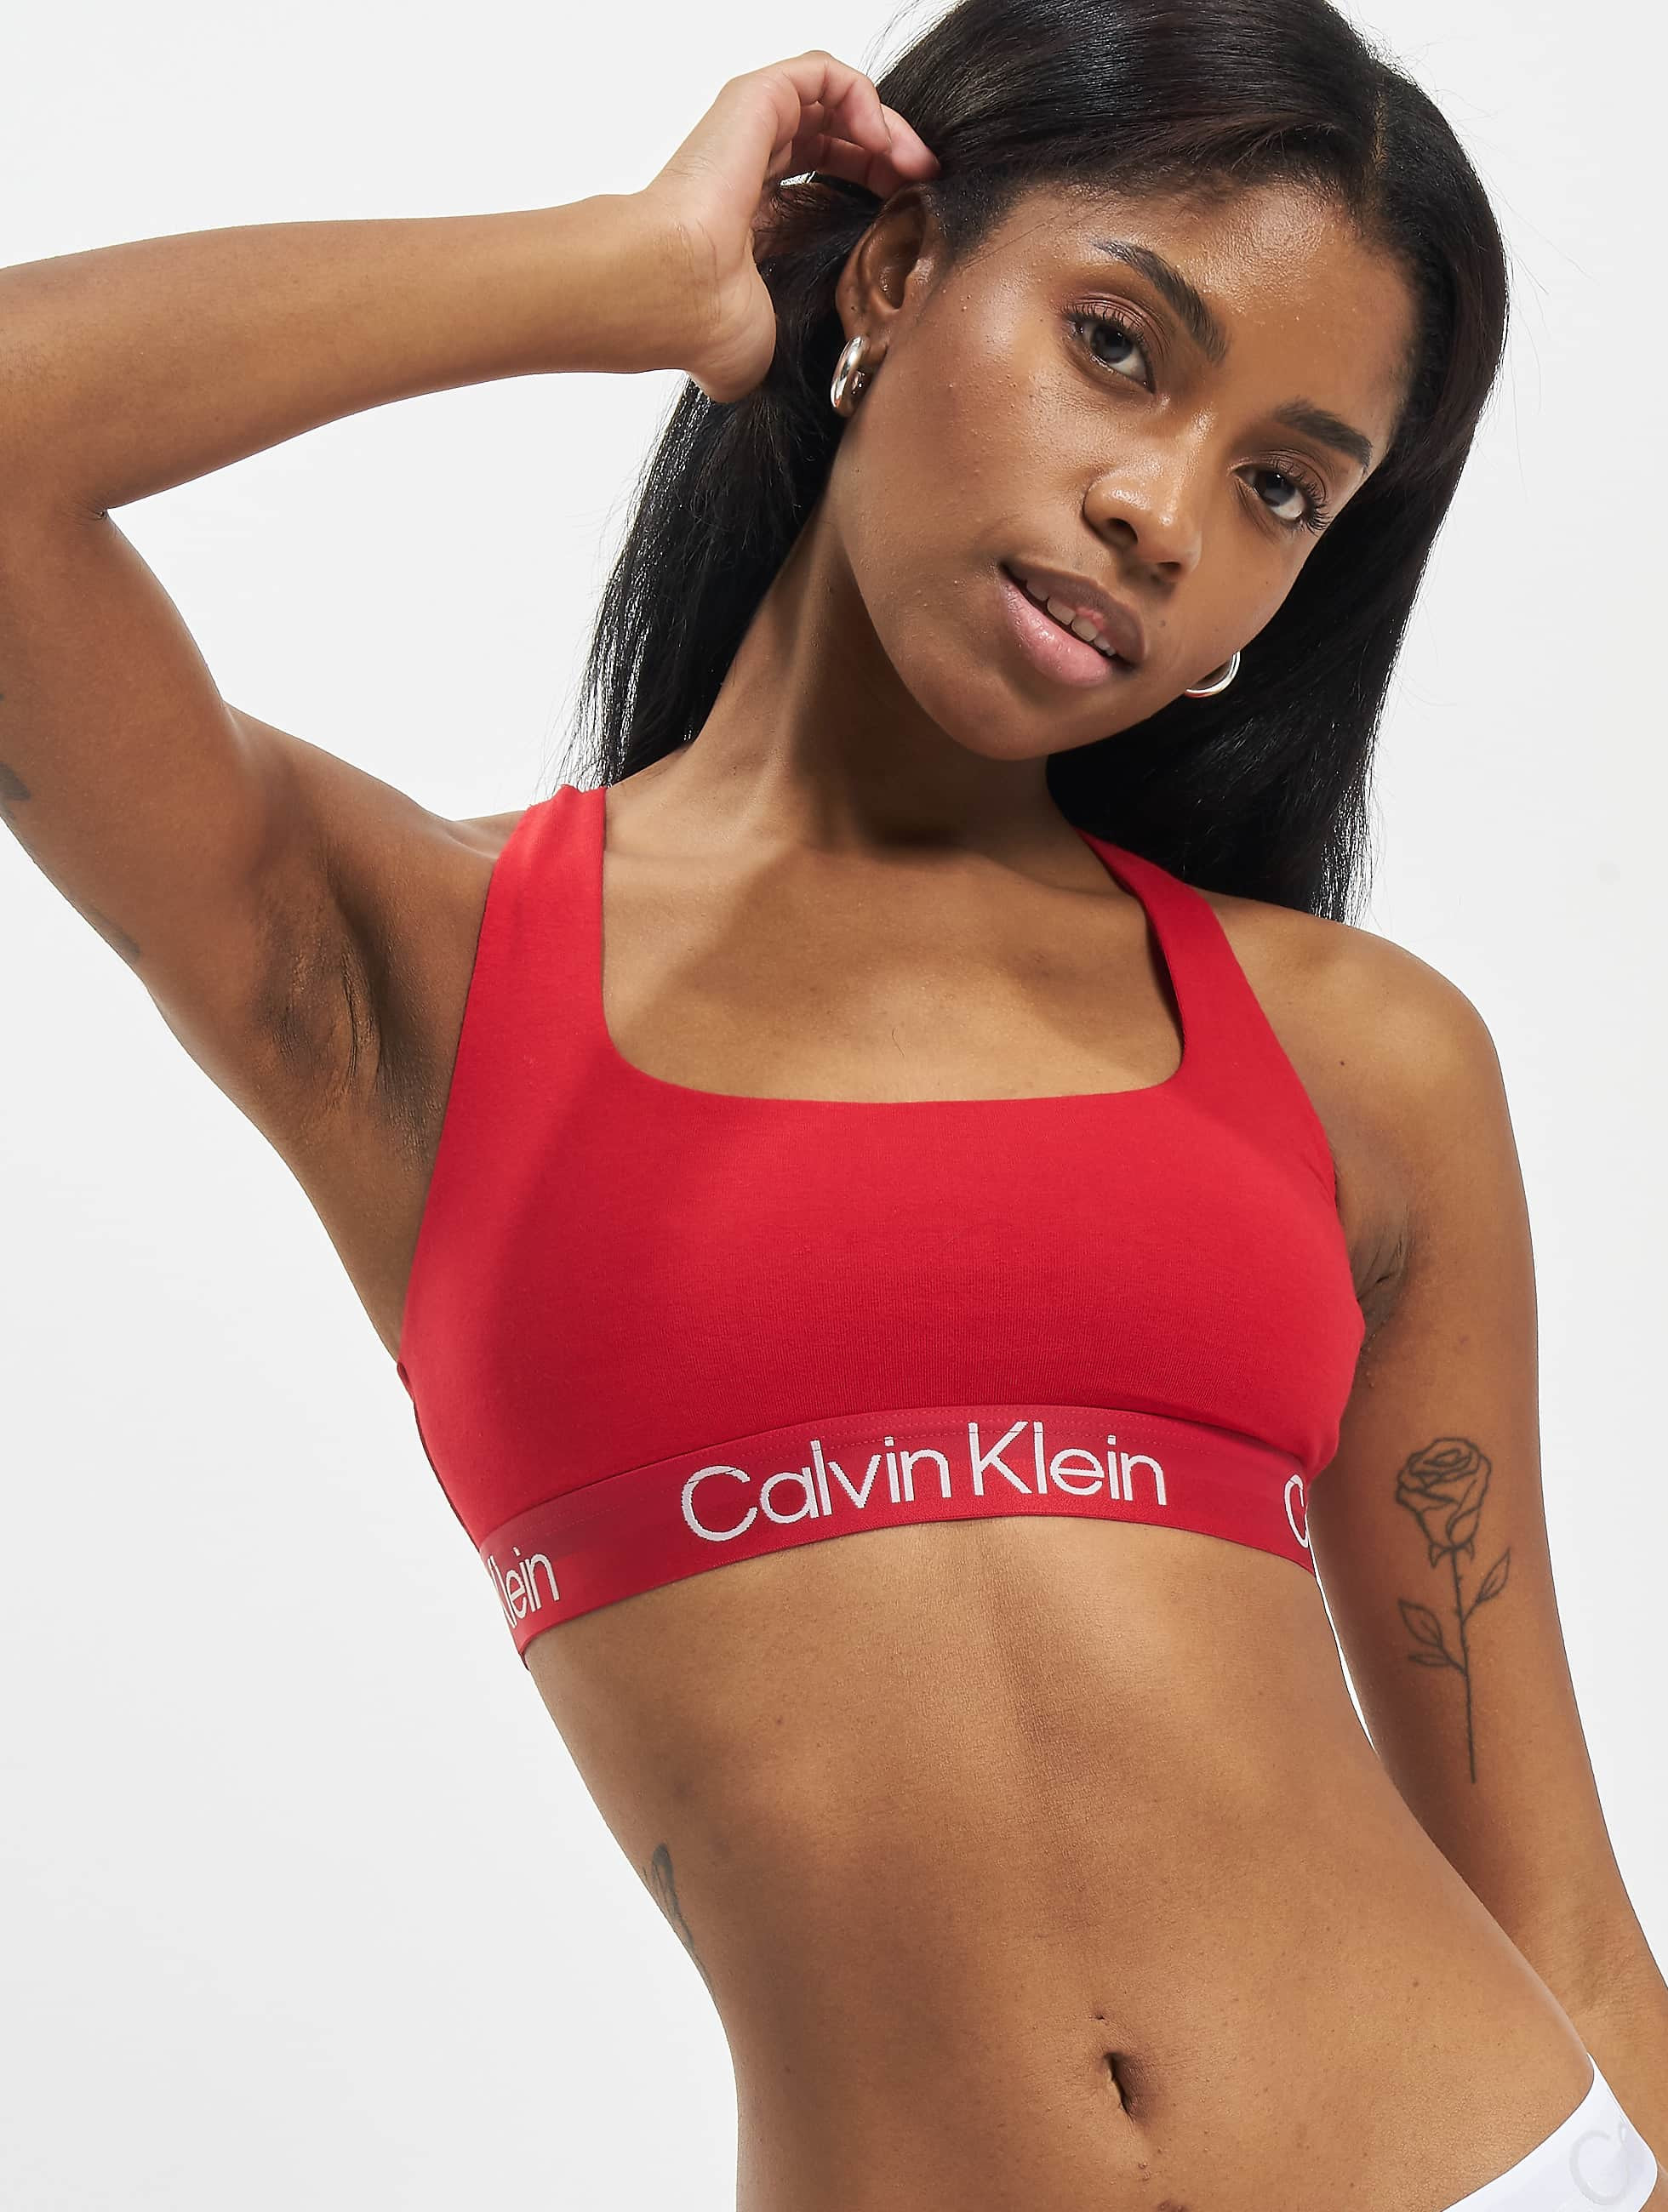 Calvin Klein Underwear / Beachwear / Underwear Underwear Unlined in red  972395